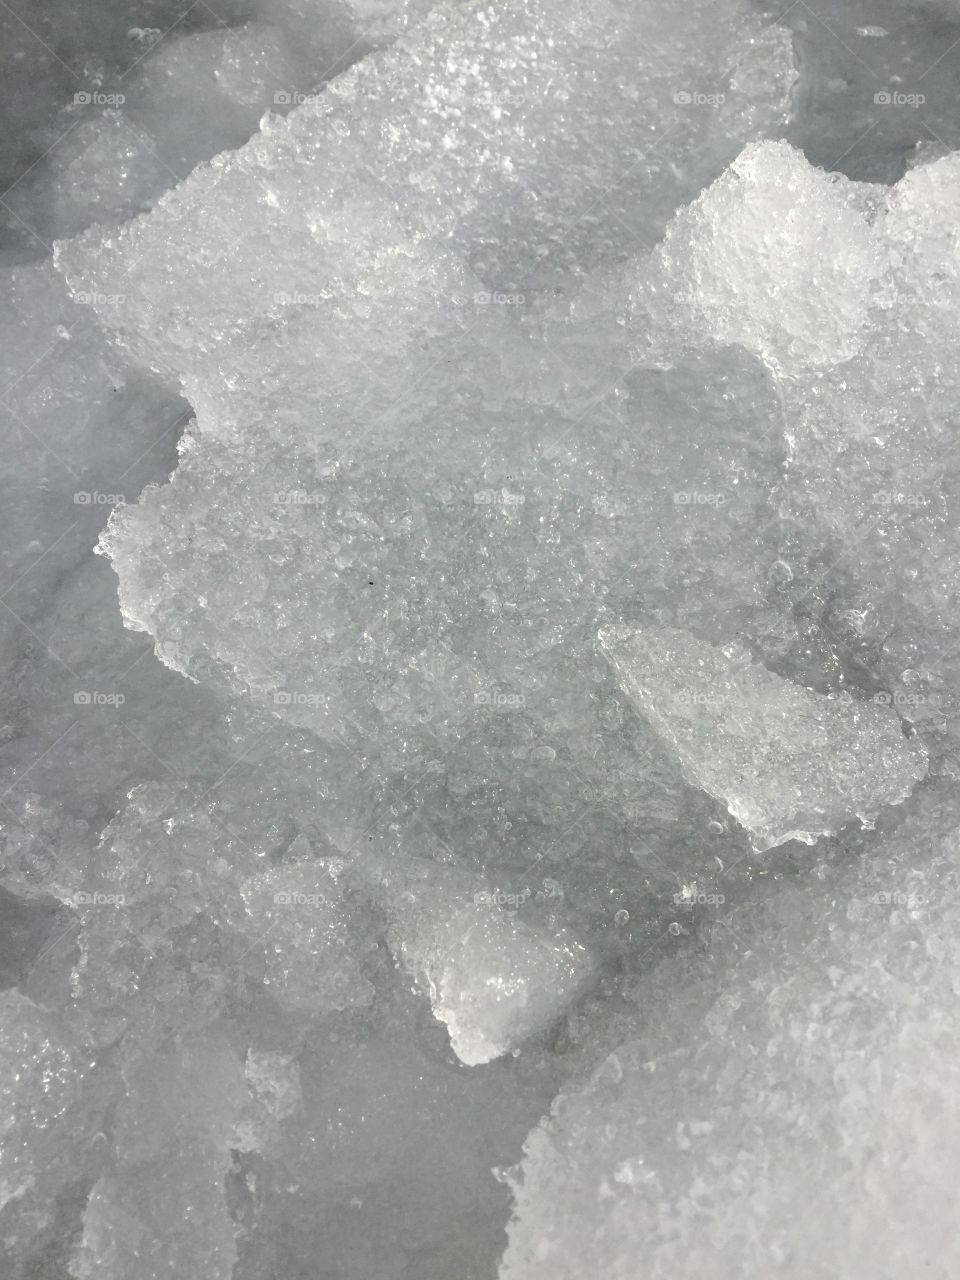 Slushy ice